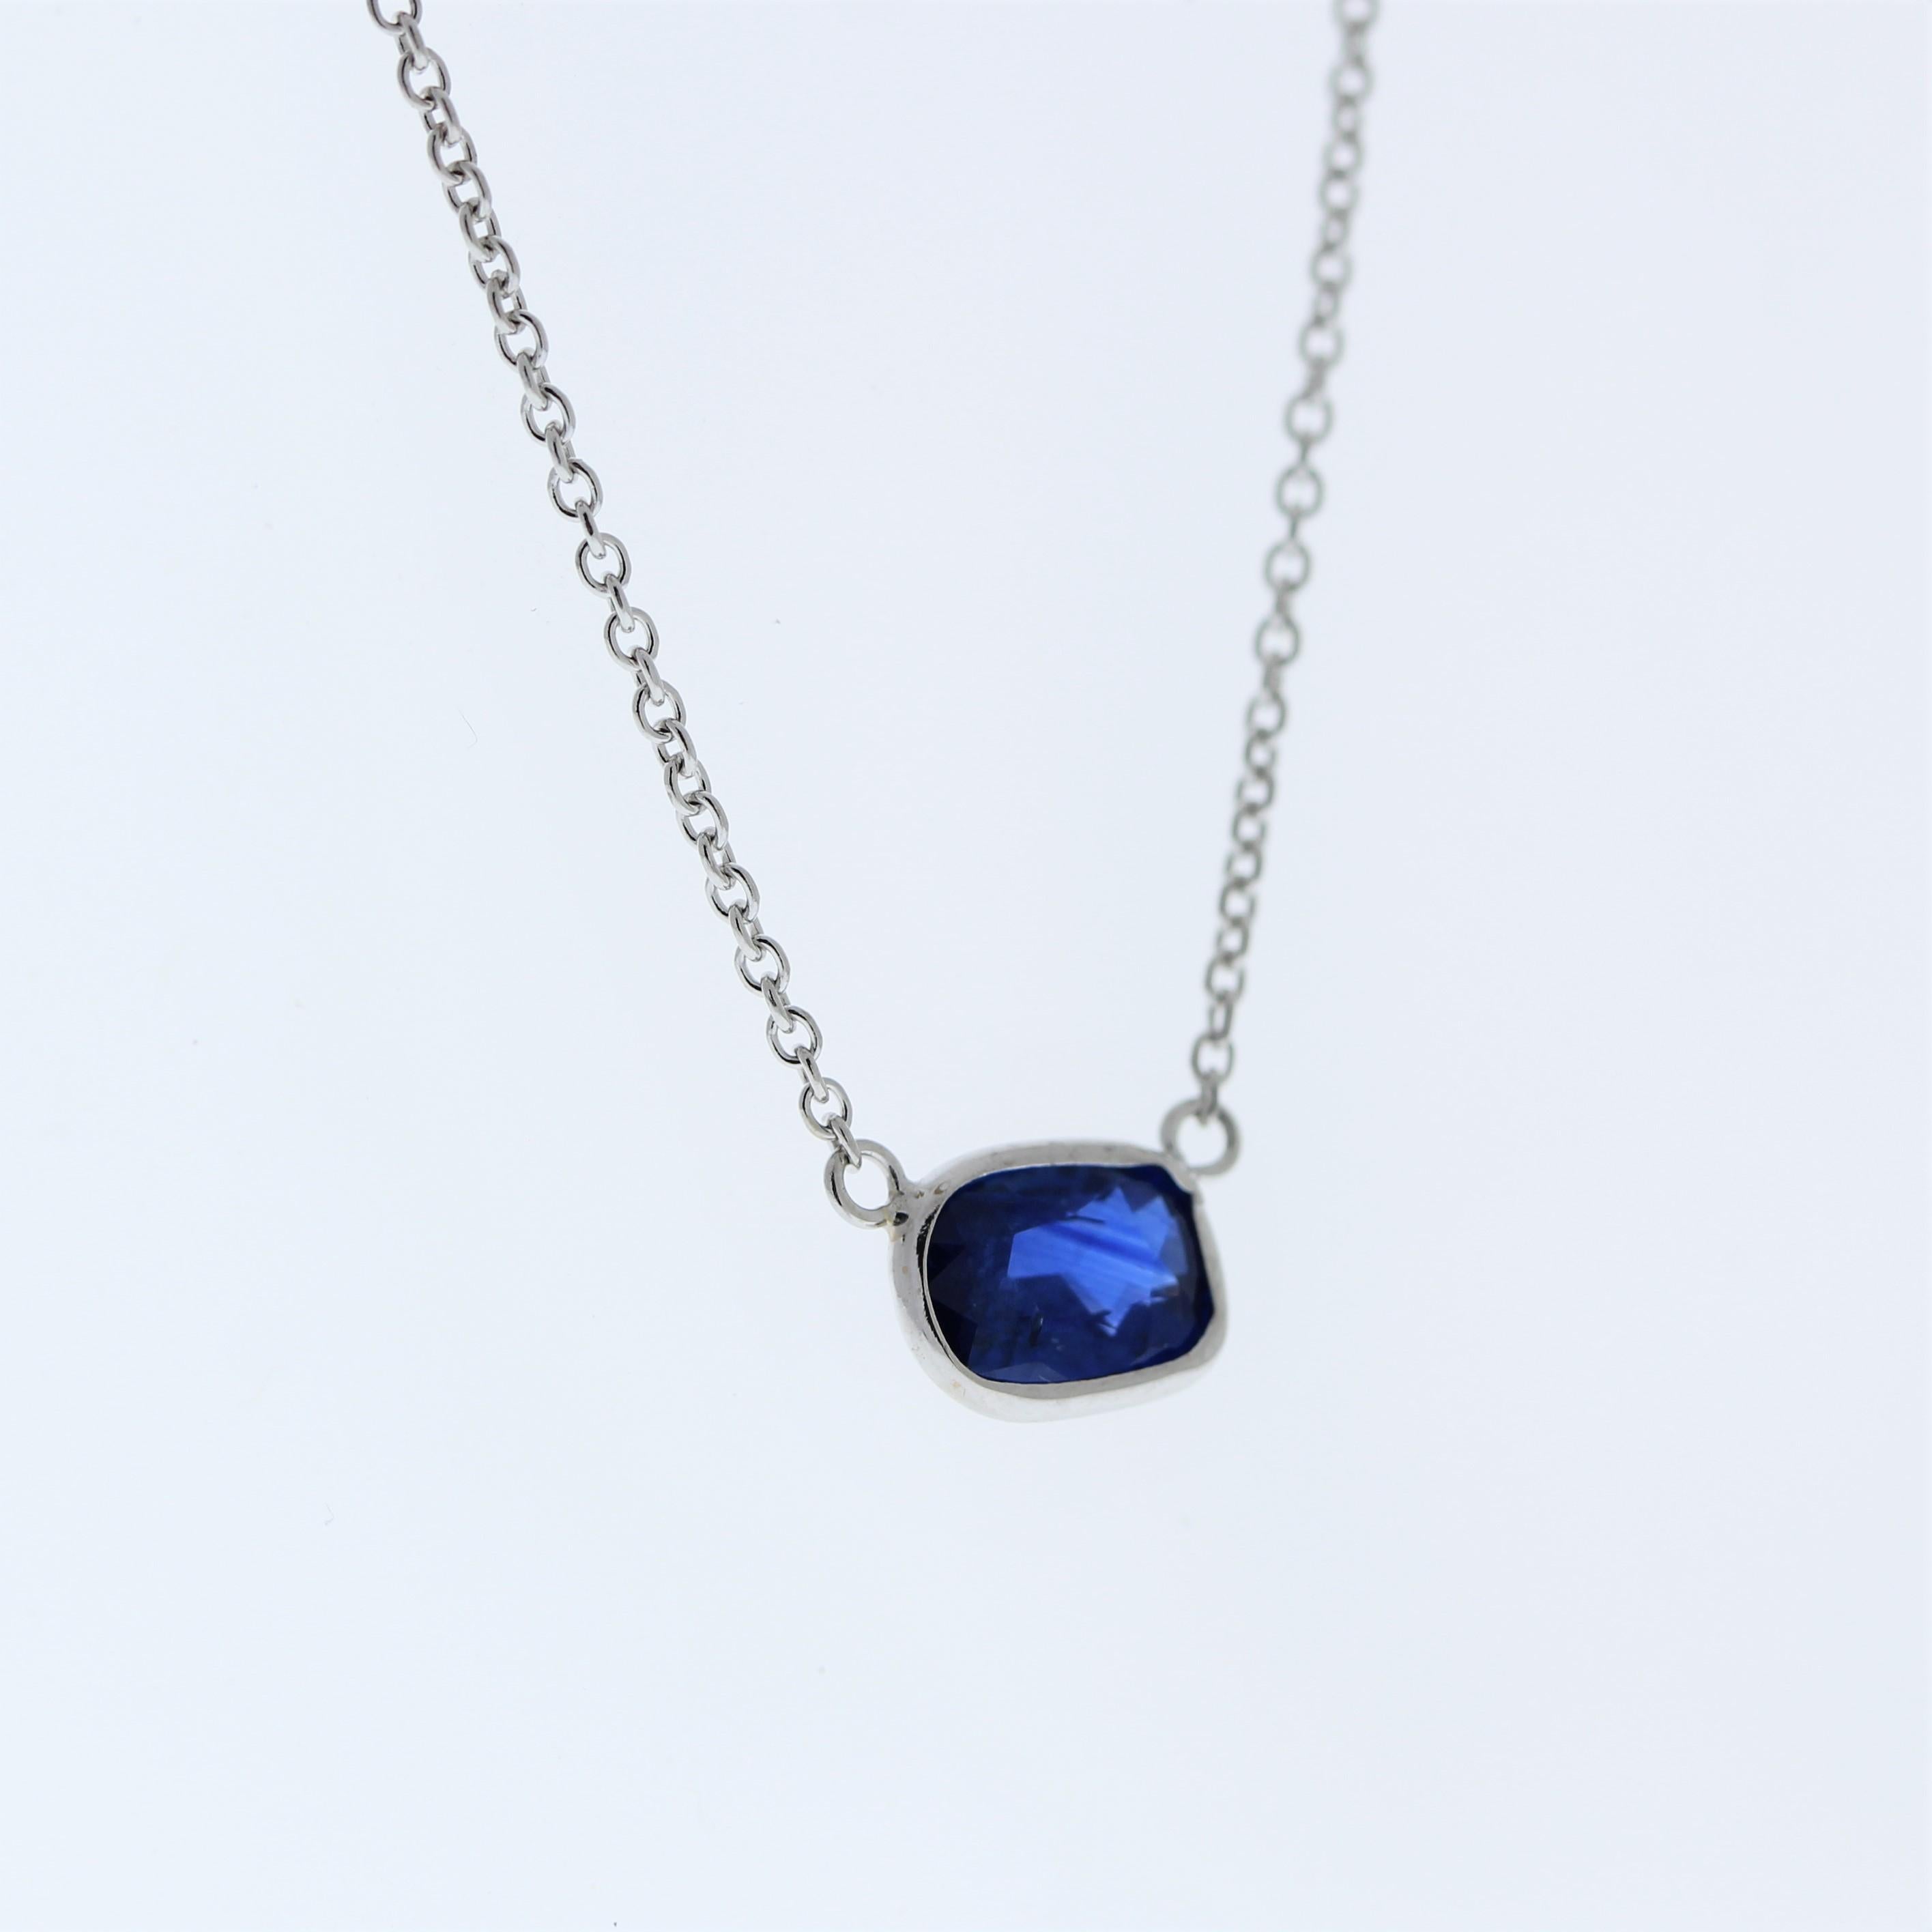 Die Halskette besteht aus einem blauen Saphir im Kissenschliff von 1,56 Karat, der in einen Anhänger oder eine Fassung aus 14 Karat Weißgold gefasst ist. Der Kissenschliff und die Farbe des blauen Saphirs in der Weißgoldfassung sind geeignet, ein